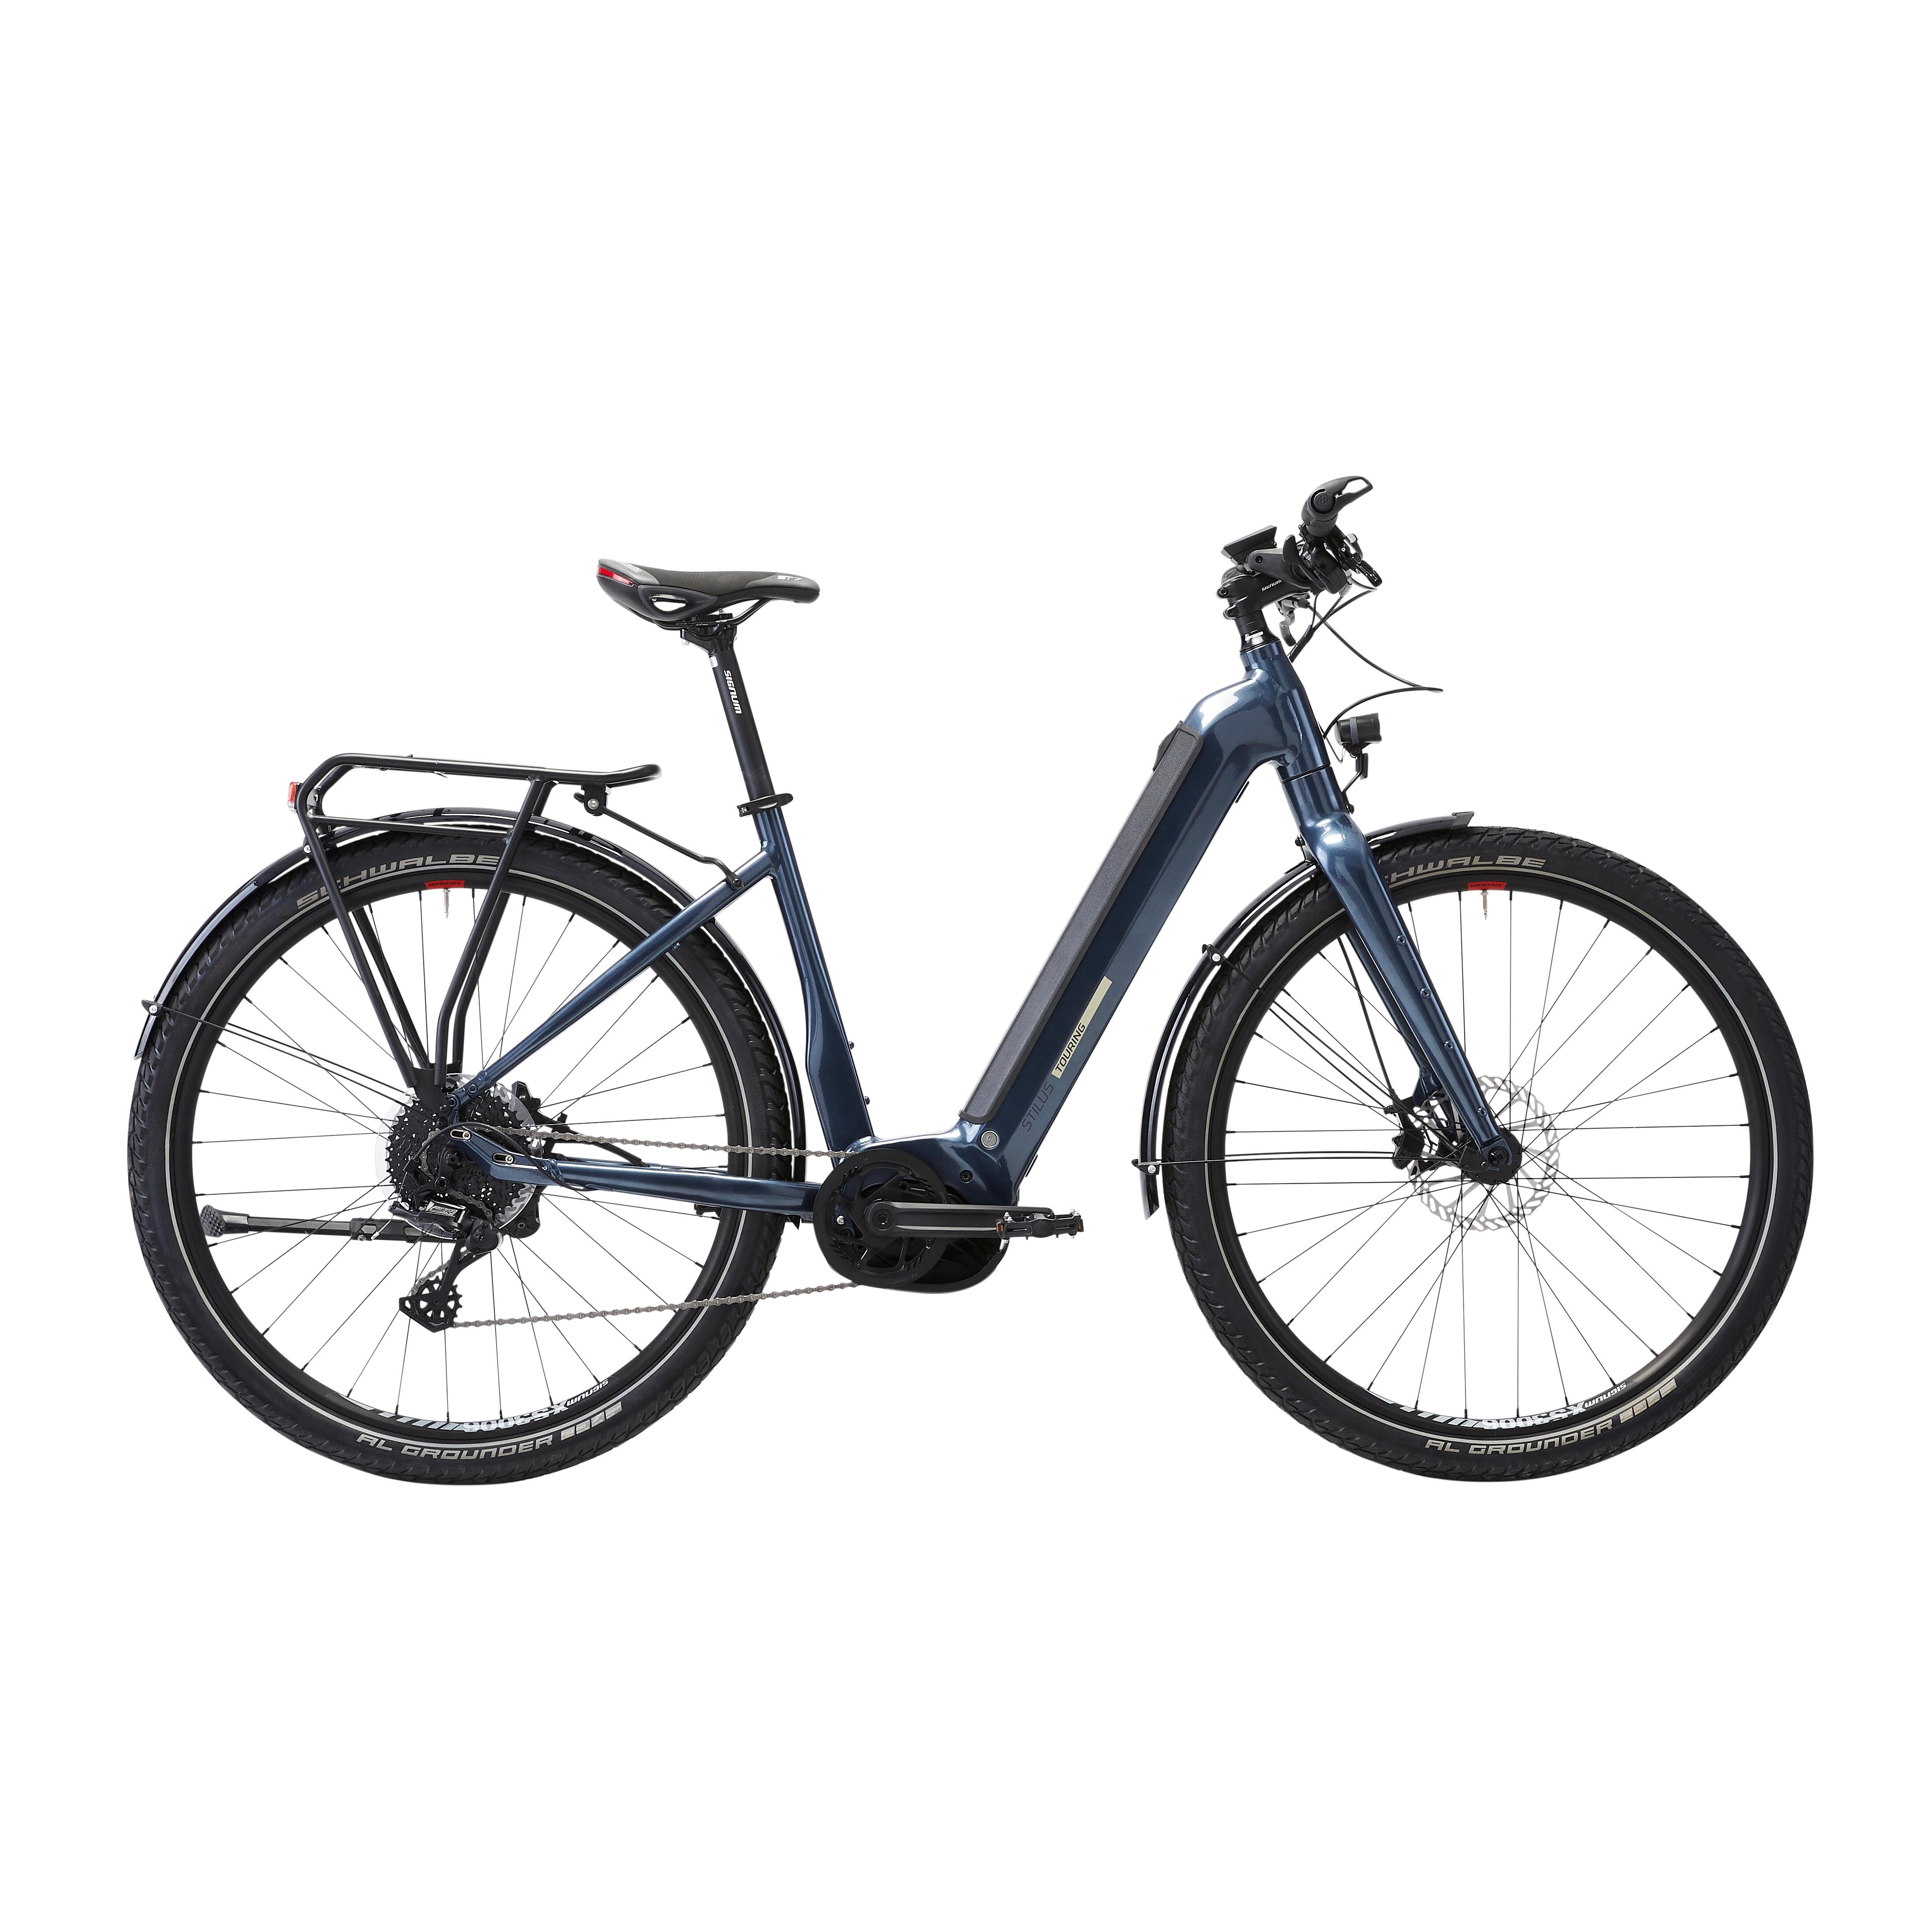 Bicicletă electrică de călătorie cu motor central puternic Bosch – Stilus E-Touring LF bicicleta imagine 2022